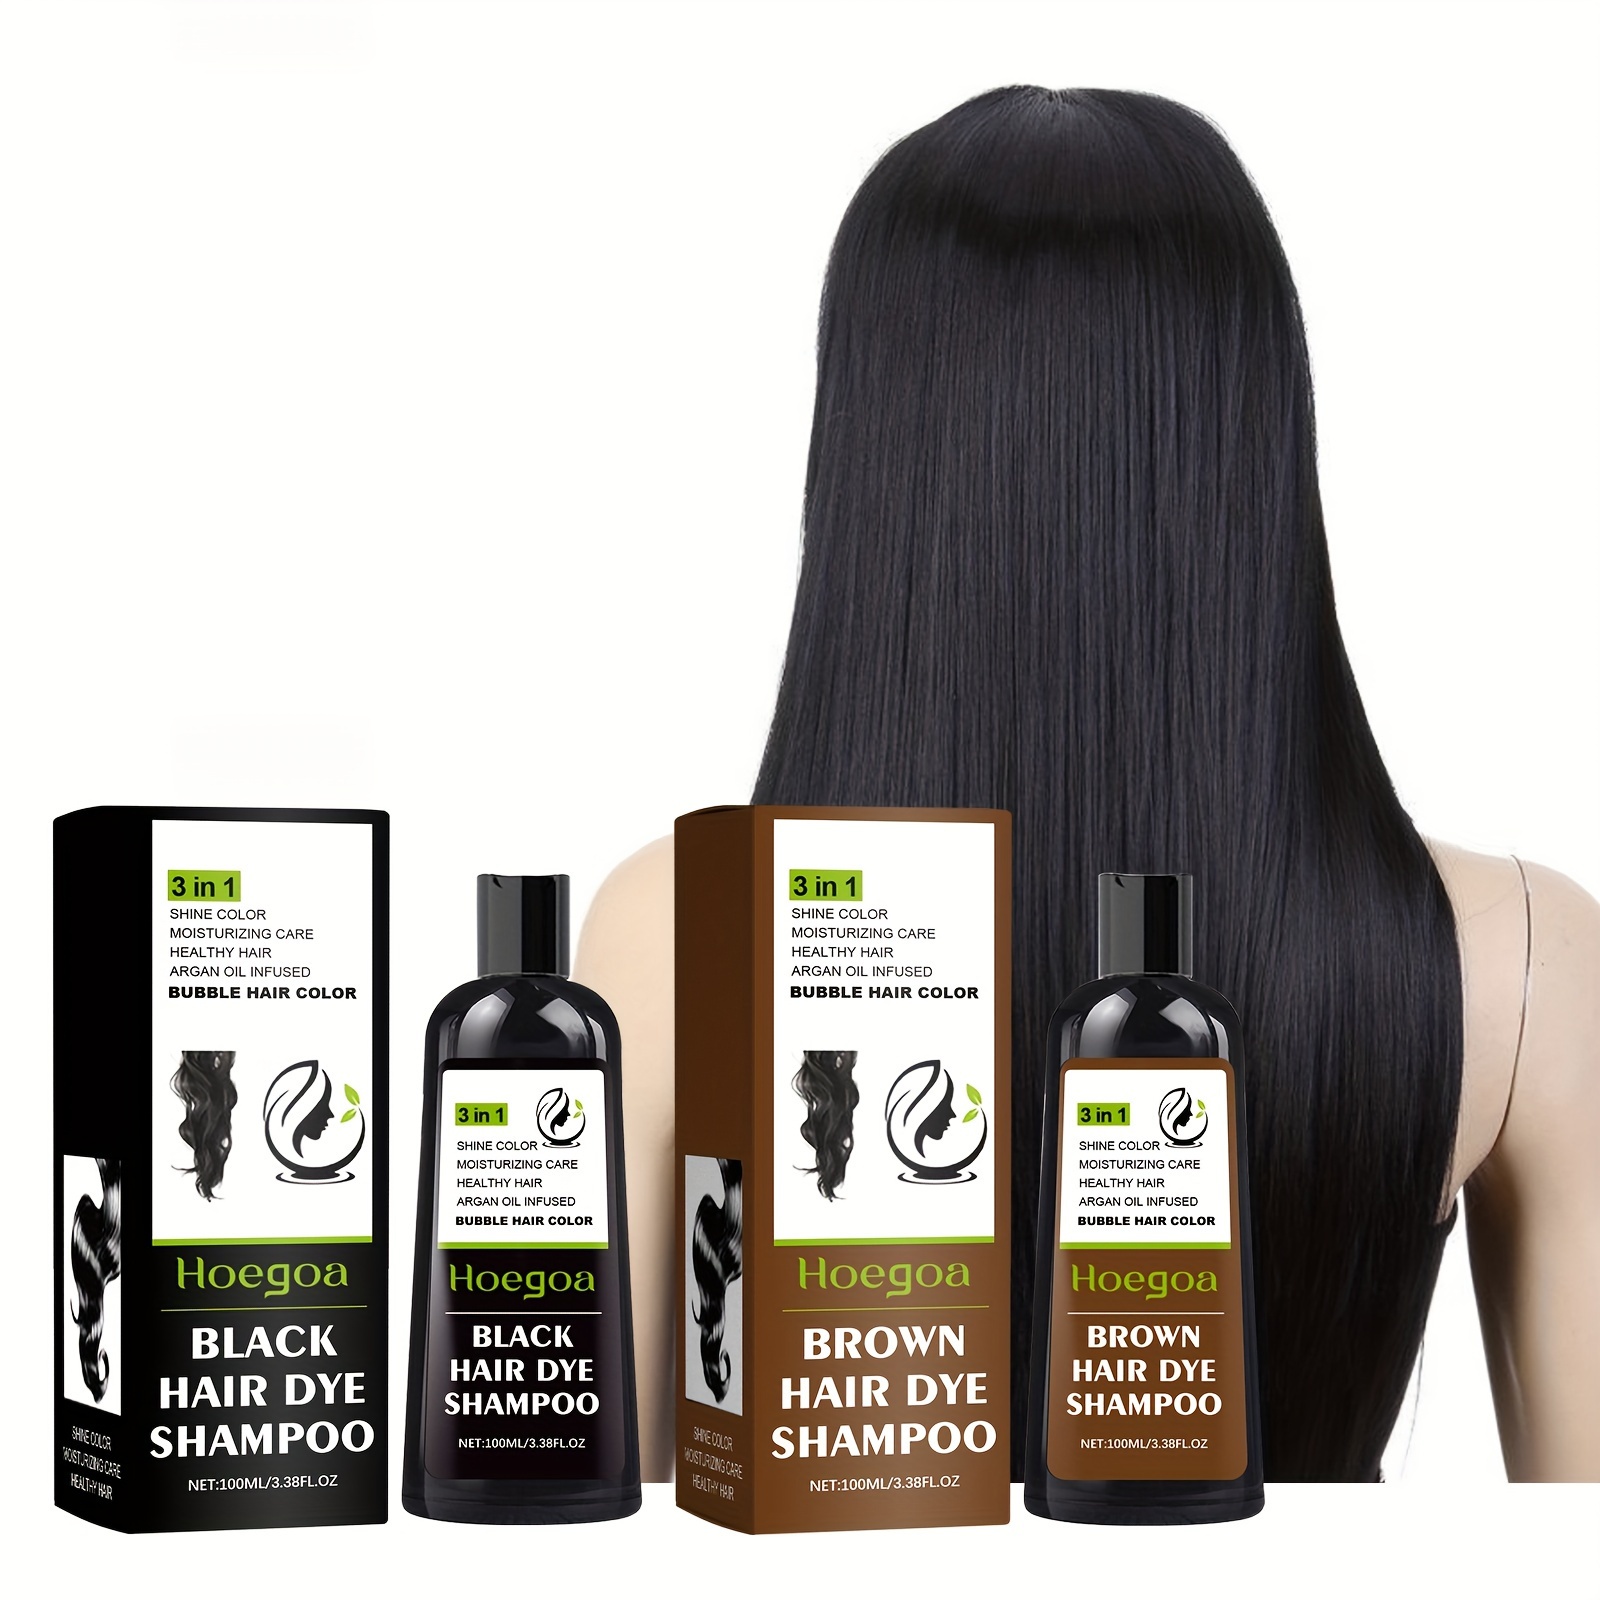 

100ml Hair Dye Shampoo, Plant Bubble Hair Color Shampoo, Instant Hair Dye Shampoo For Covering Gray White Hair